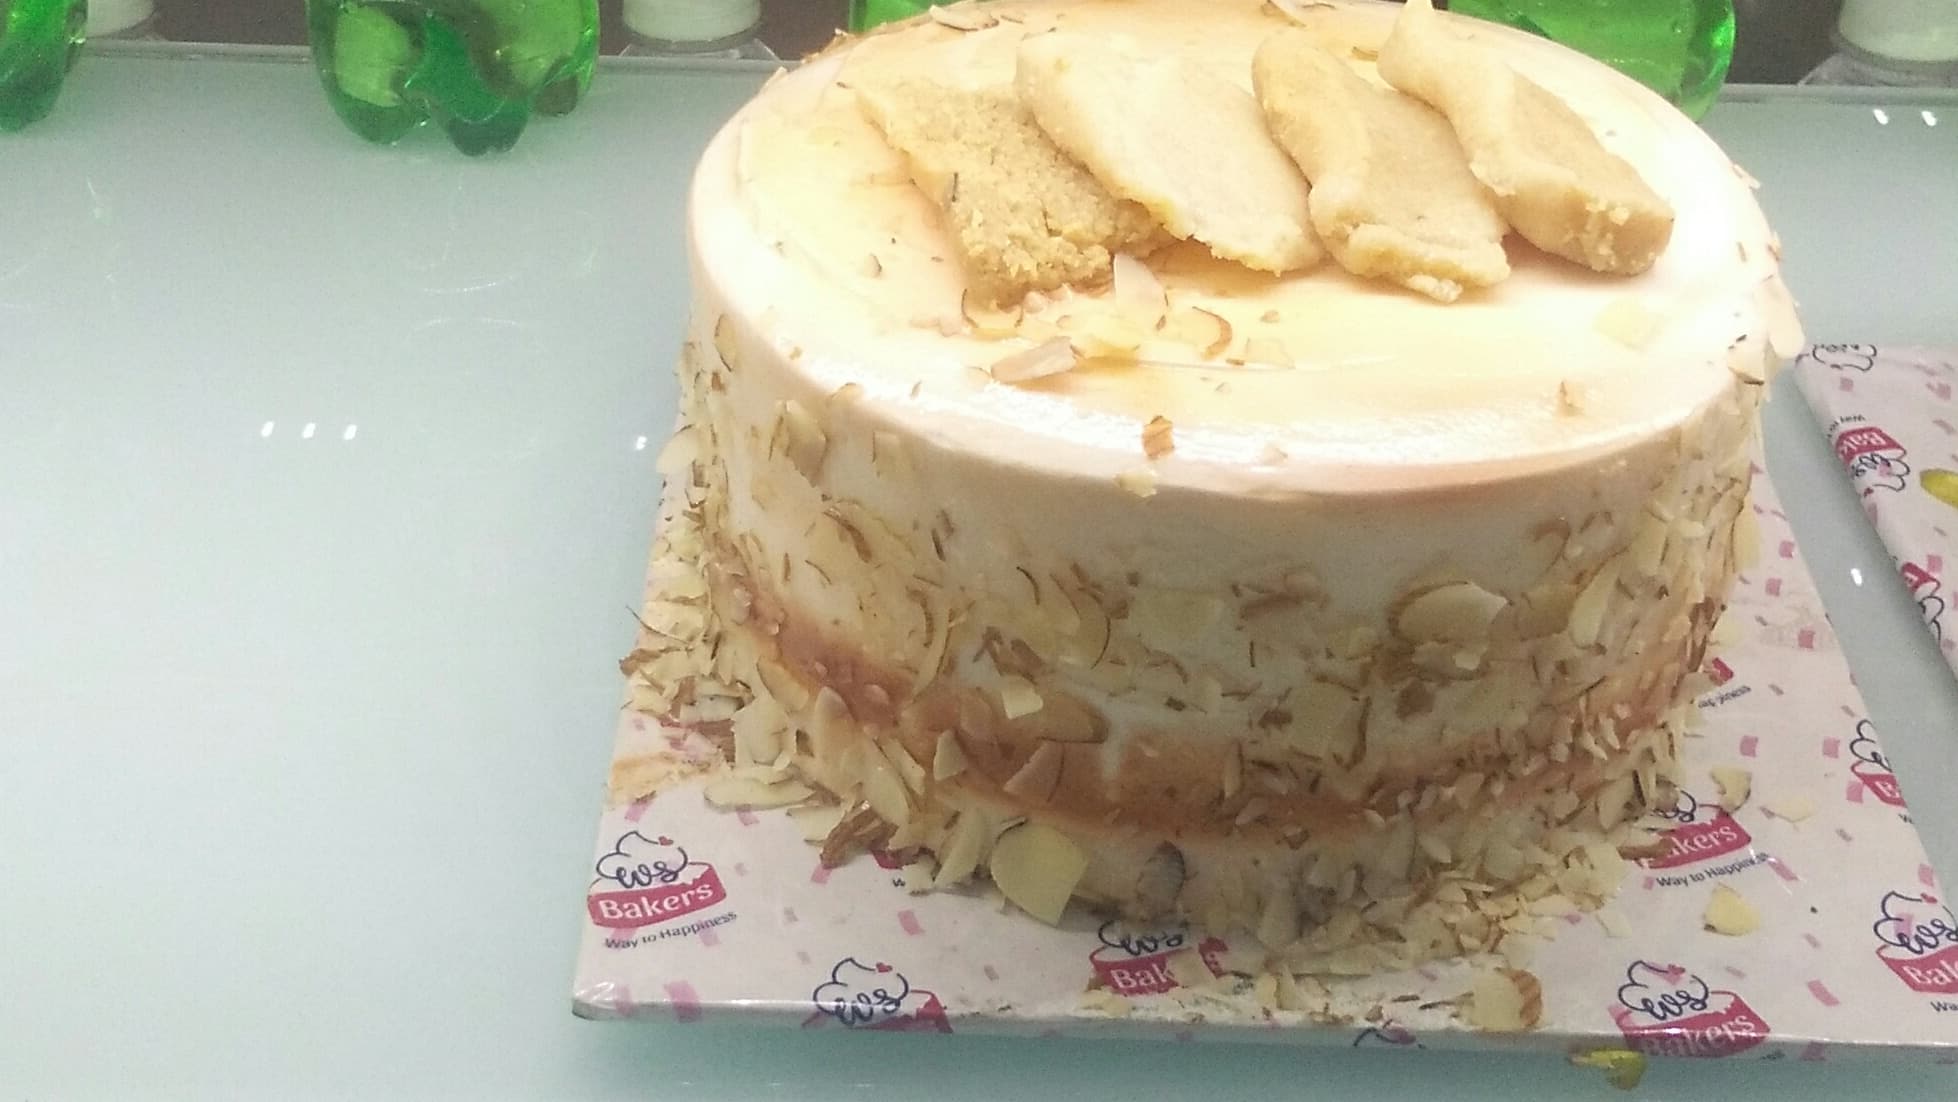 Kalakand Cake - Kalakand Meets Sponge Cake in One Irresistible Treat